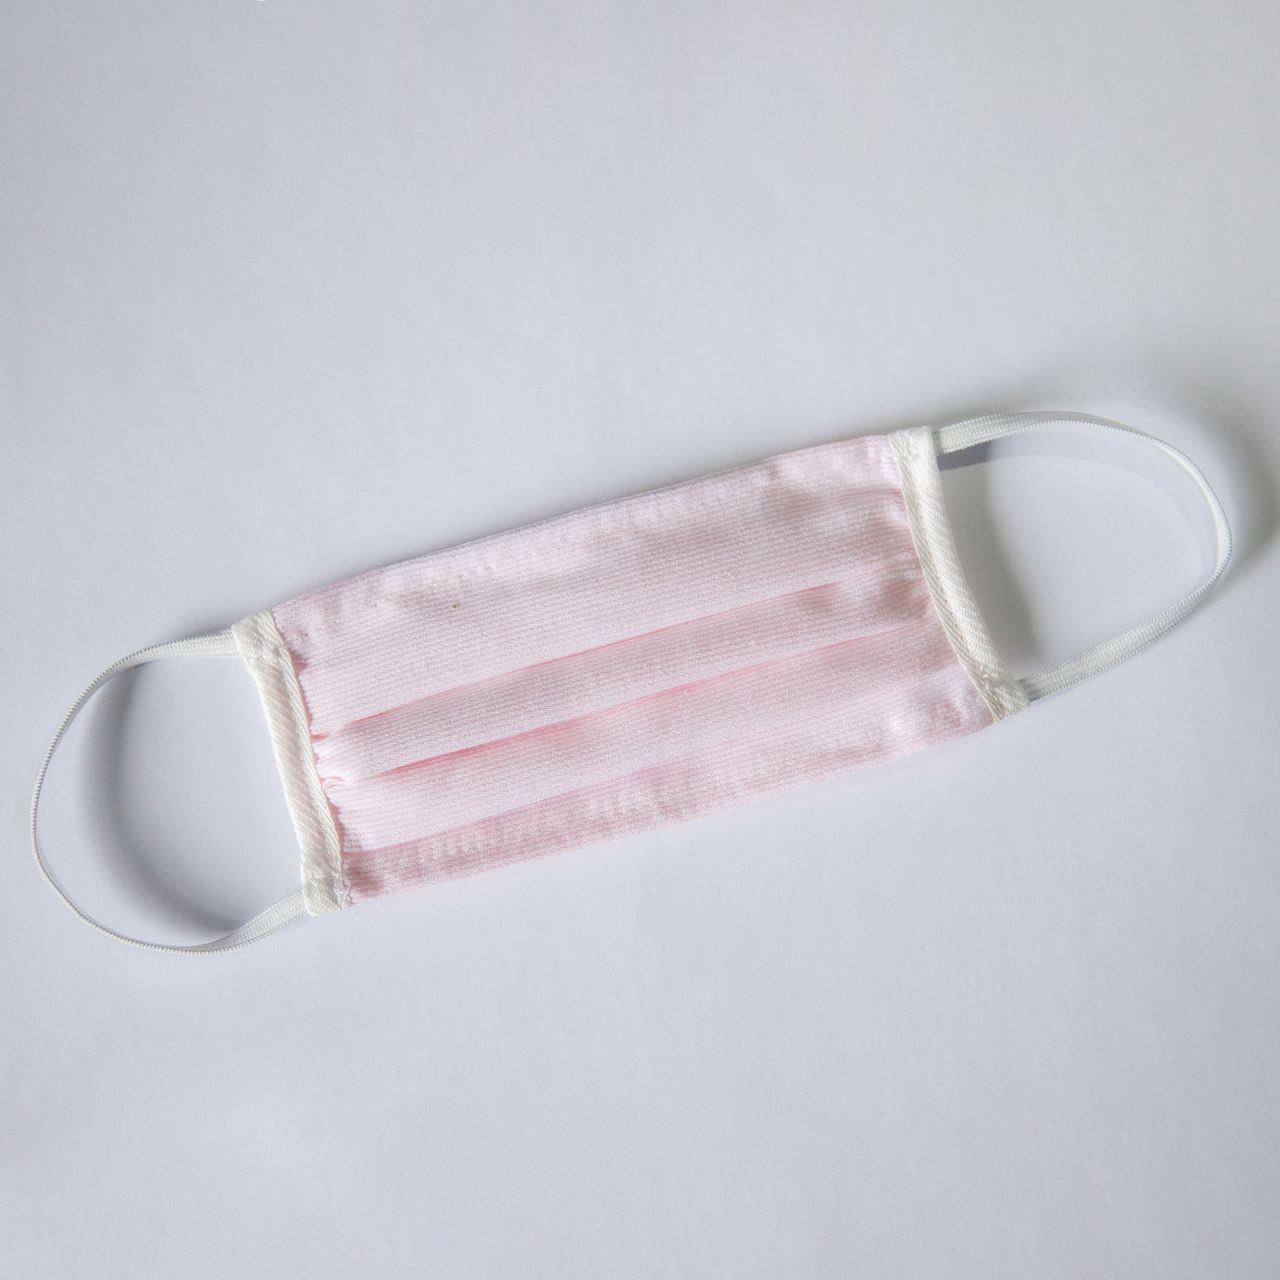 Mund- & Nasenmaske für Kinder mit elastischem Gummiband & eingenähtem Nasenbügel (rosa)